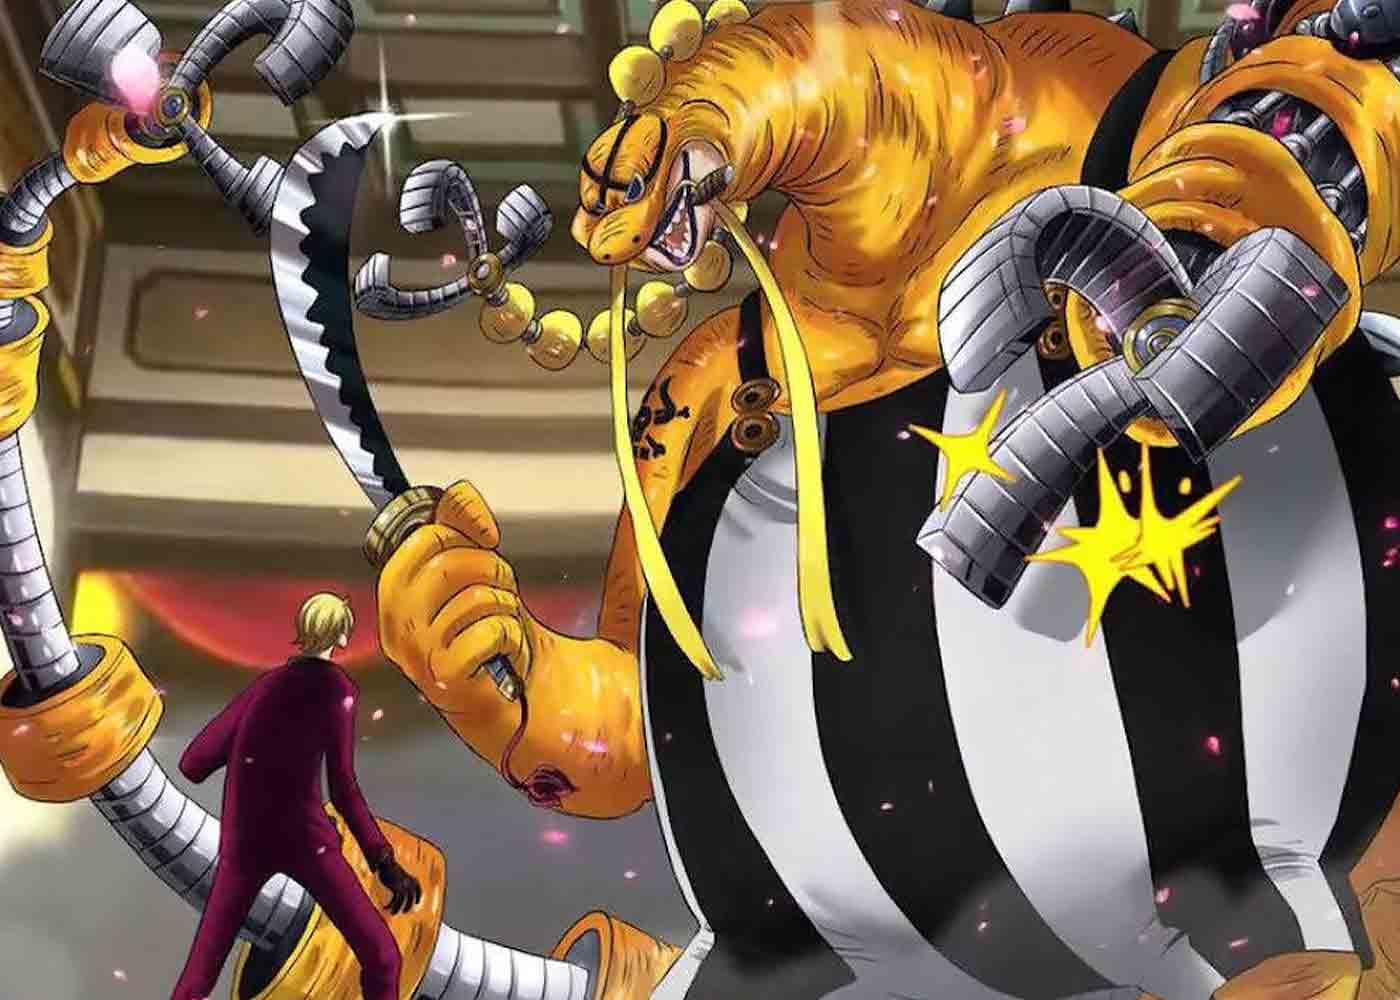 Spoiler One Piece 1034: Queen Bisa Menghilang Seperti Sanji, Semua Serangan  Germa 66 Juga Digunakan - Serambinews.com